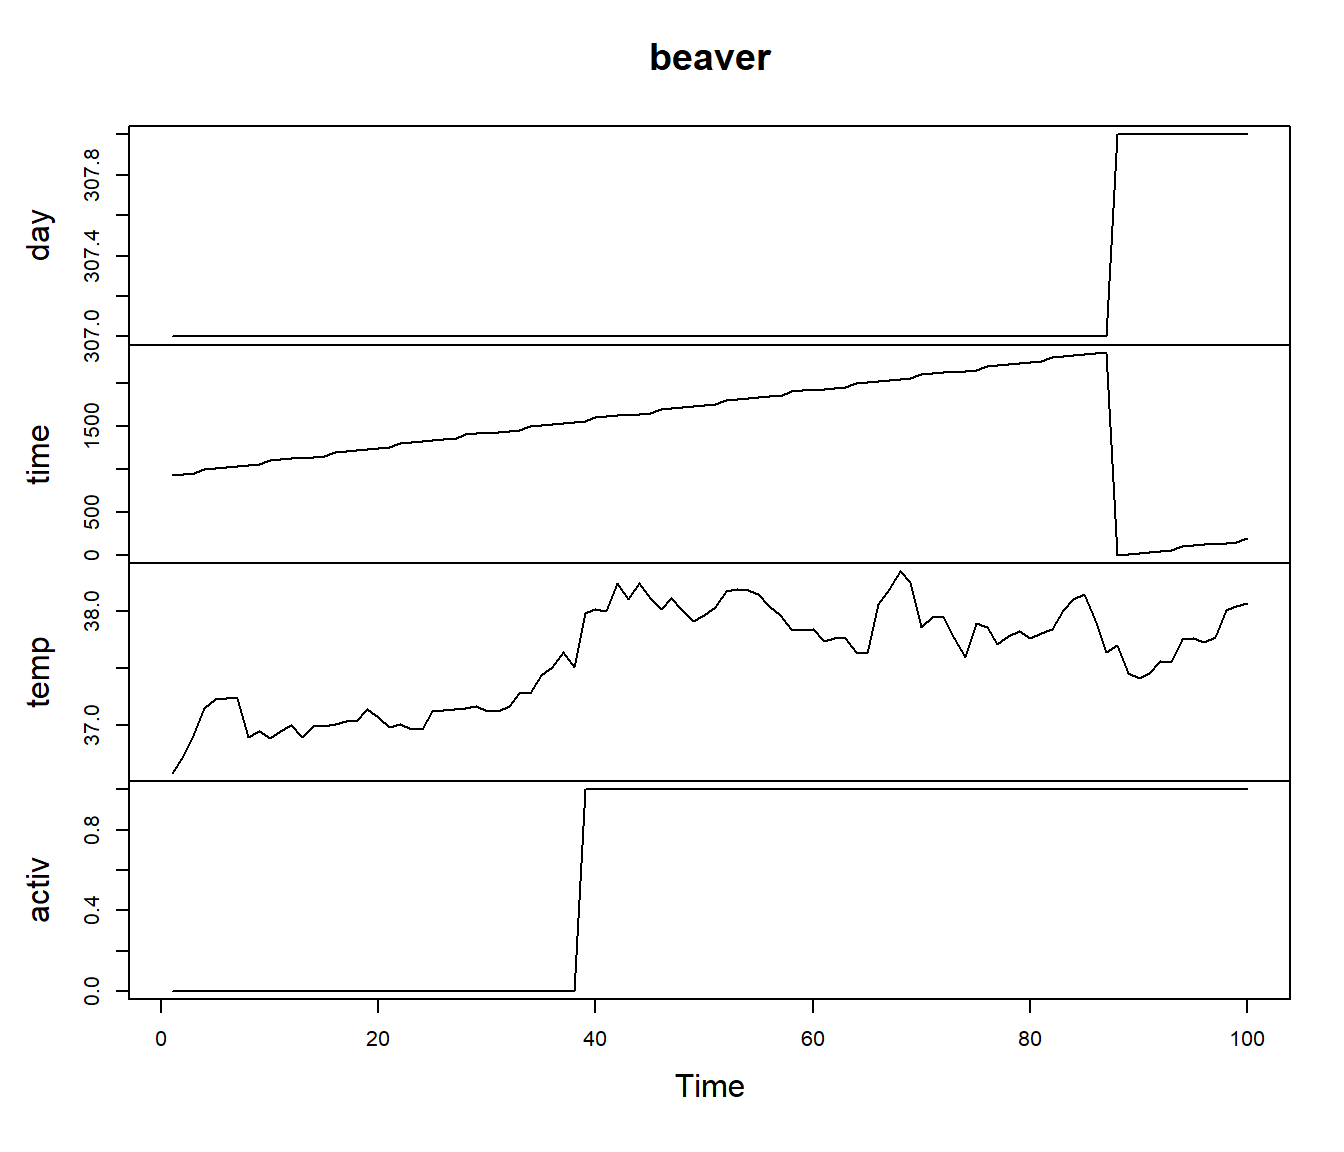 Beaver data